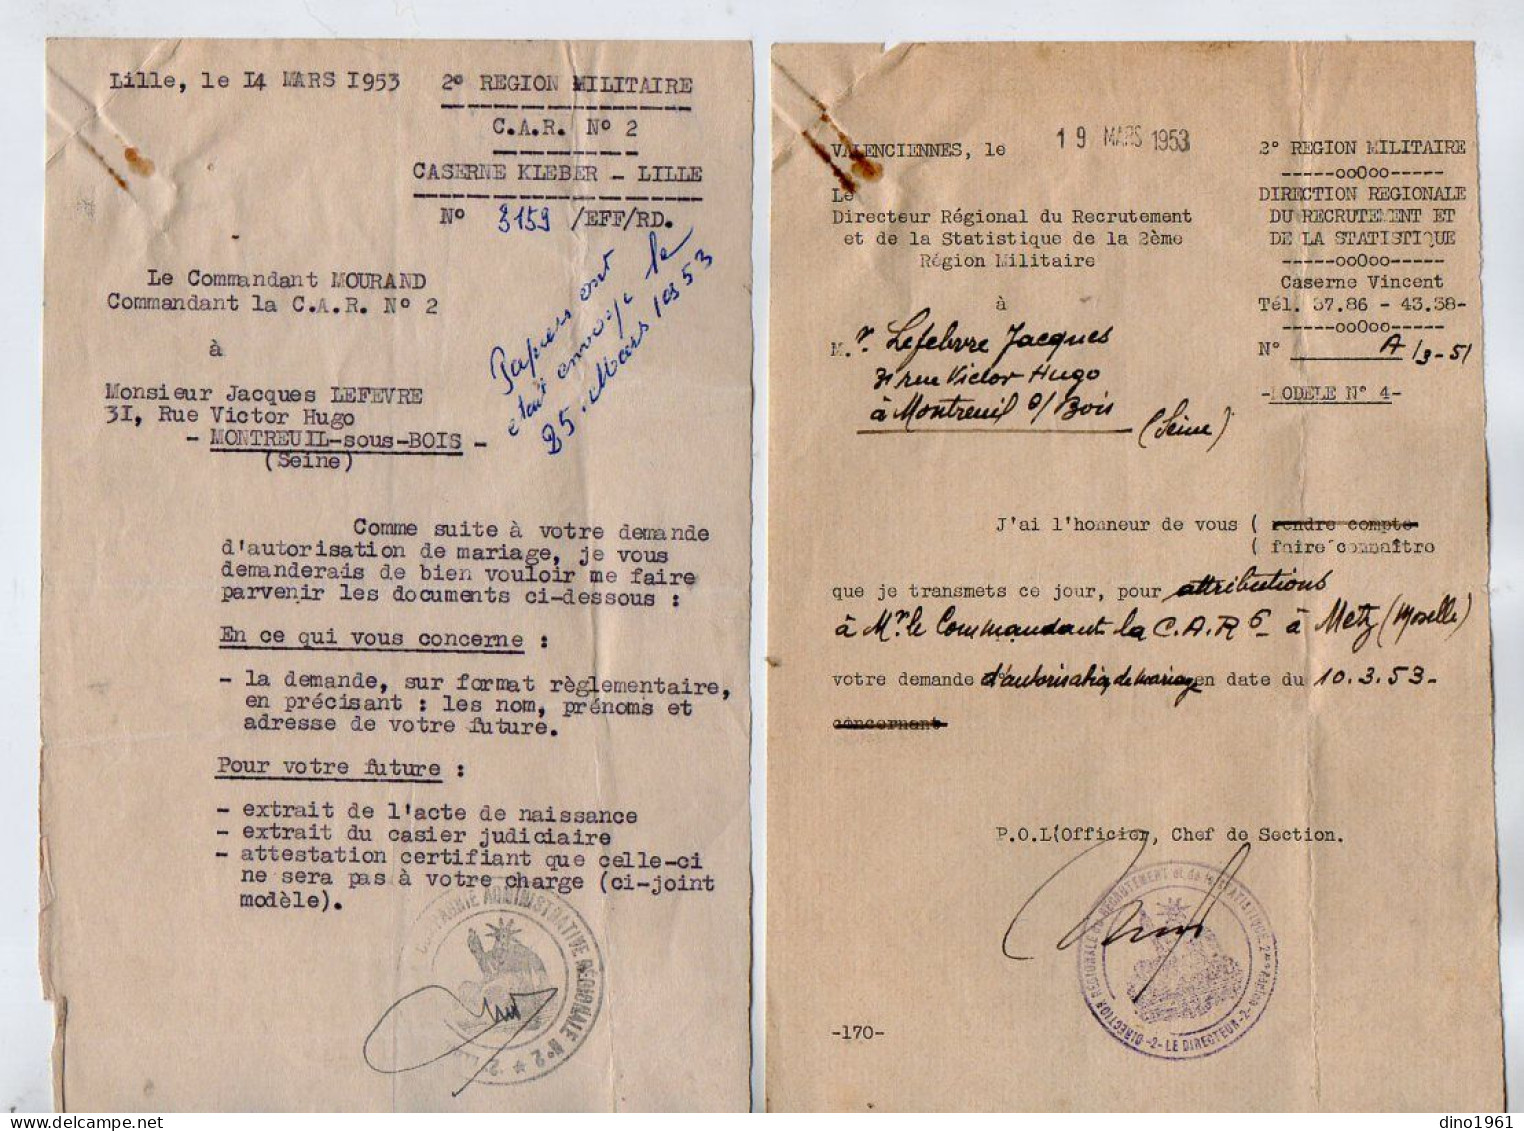 VP22.343 - MILITARIA - LILLE X VALENCIENNES 1953 - 3 Documents Concernant M. J. LEFEBVRE à MONTREUIL SOUS BOIS - Documents